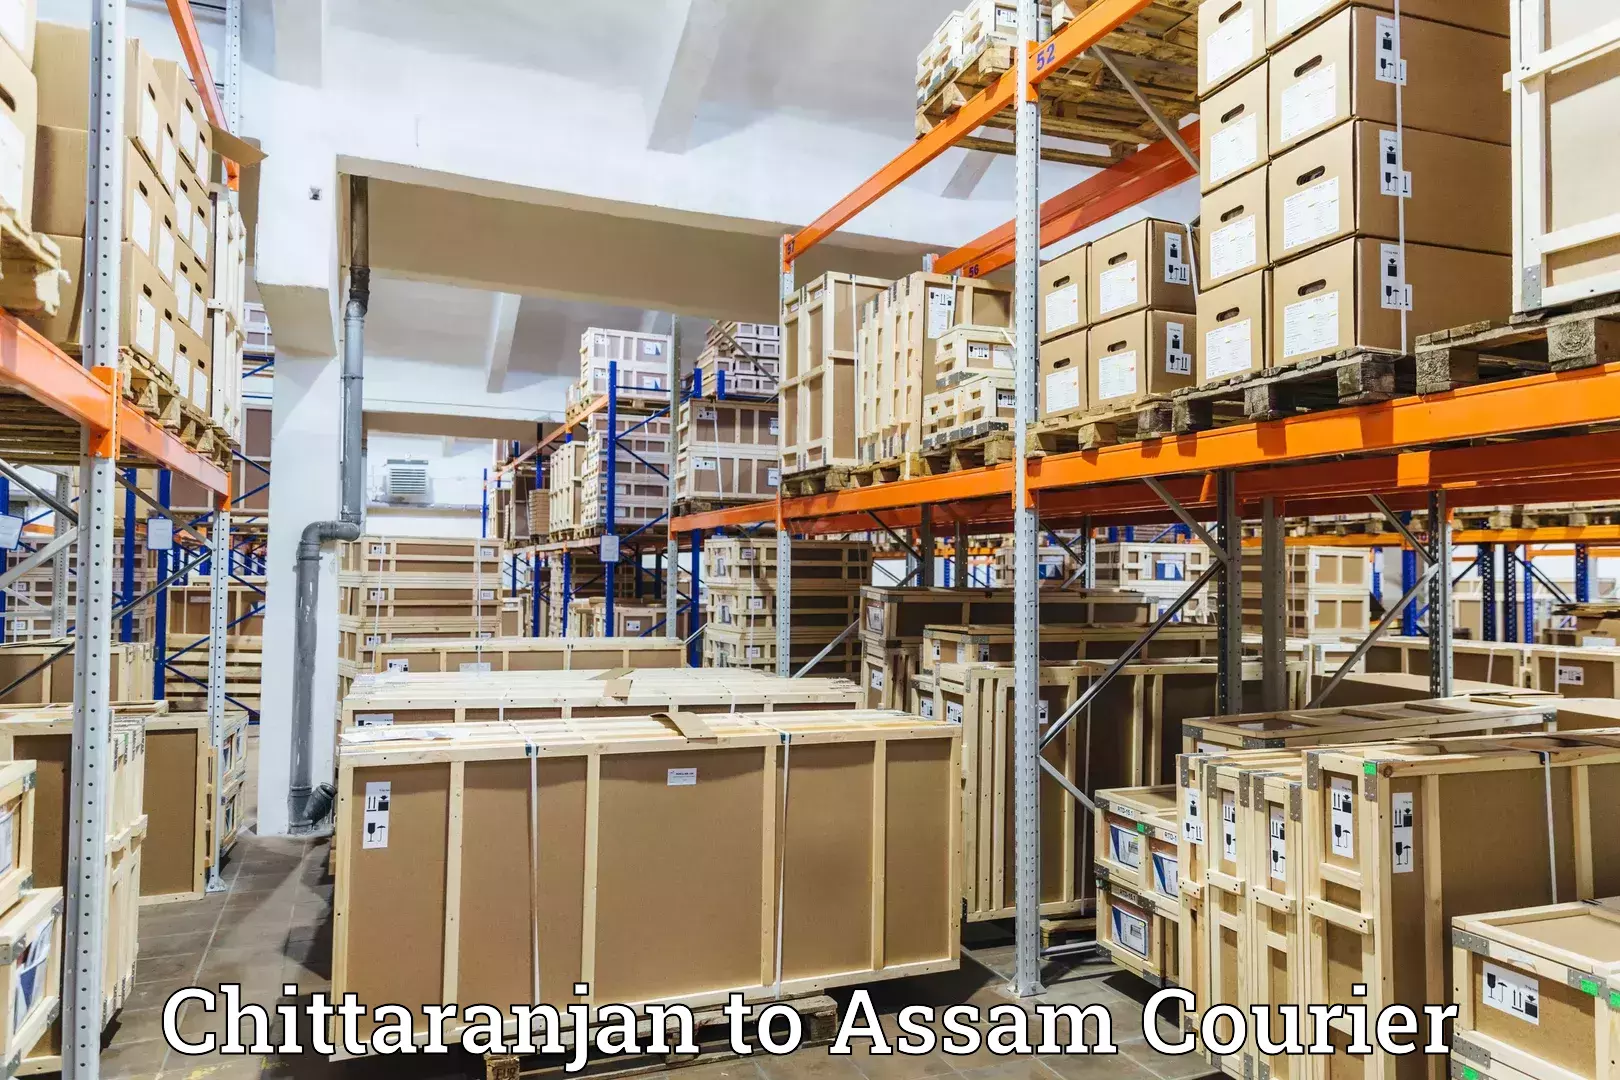 Customer-oriented courier services in Chittaranjan to Dehurda